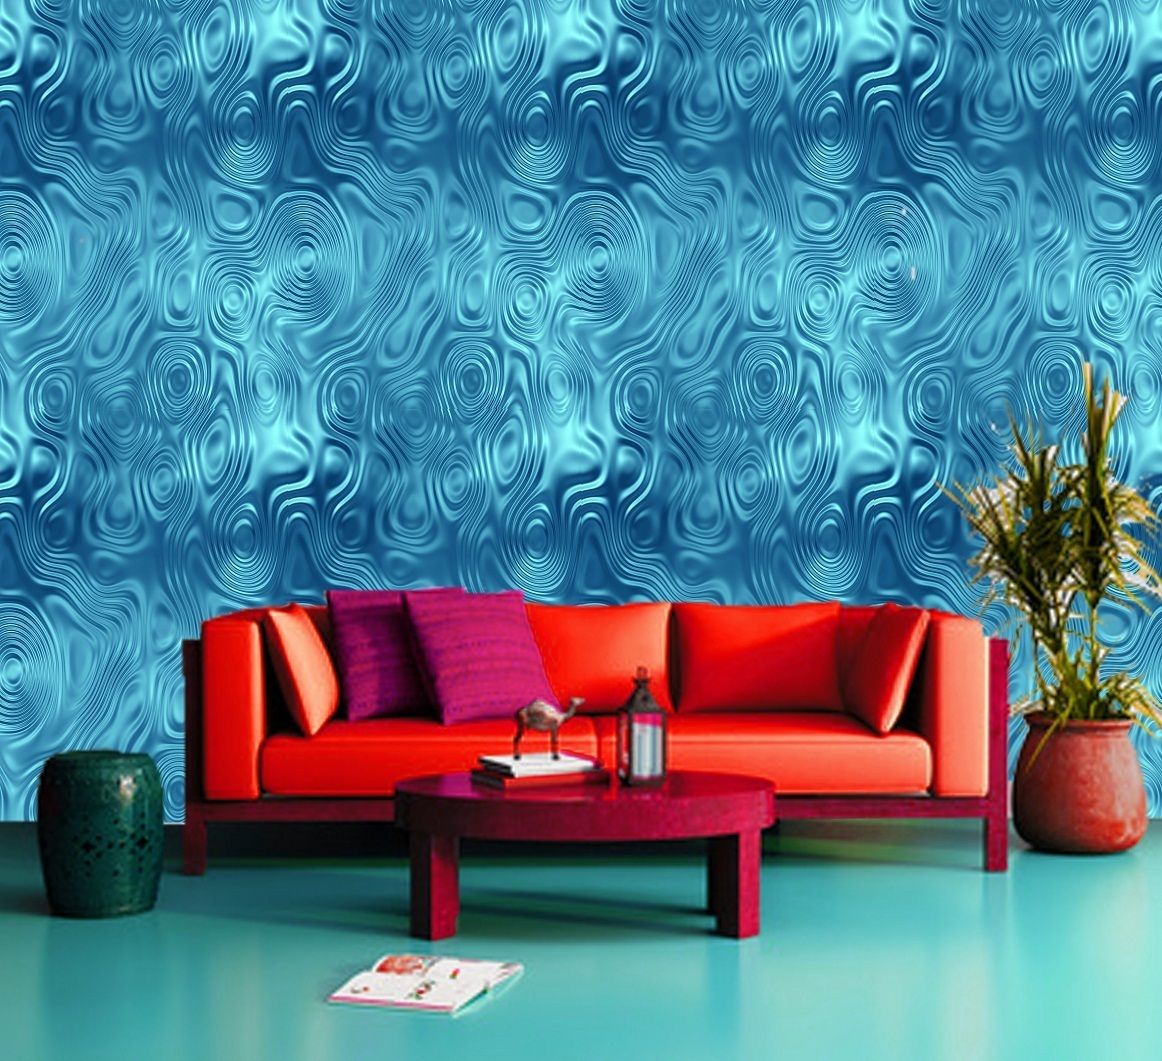 Beautyful Blue Art Water Climax 3d Effect Decorating Wallpaper Mural